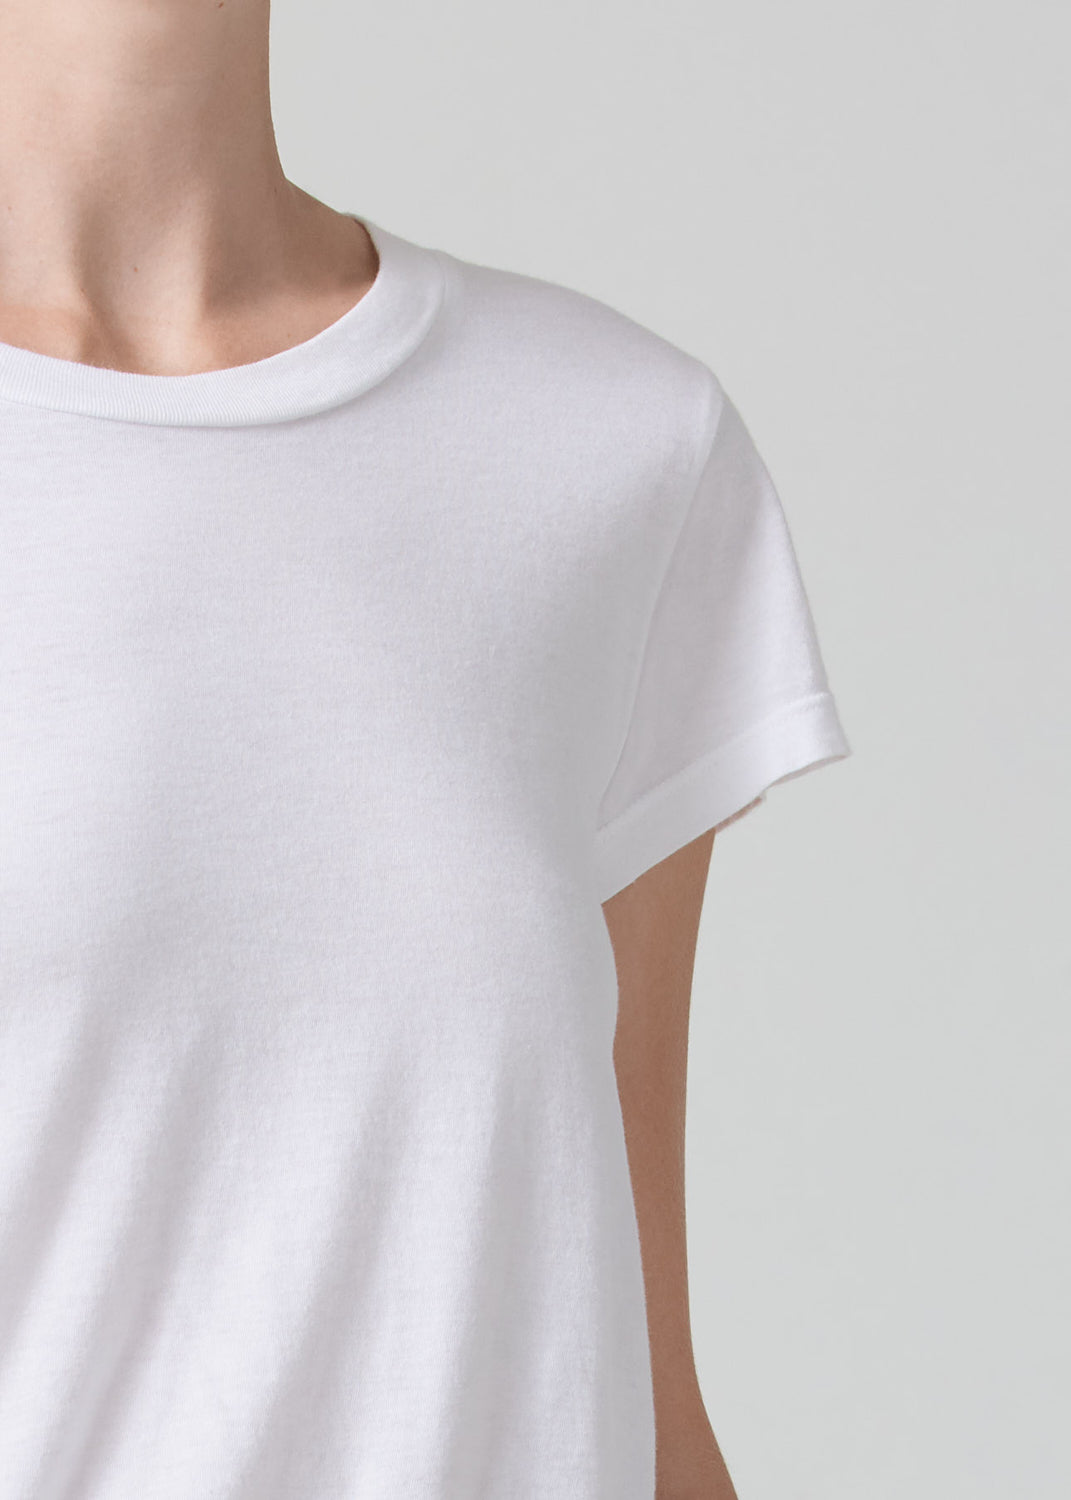 Juliette Slim T-Shirt in White detail